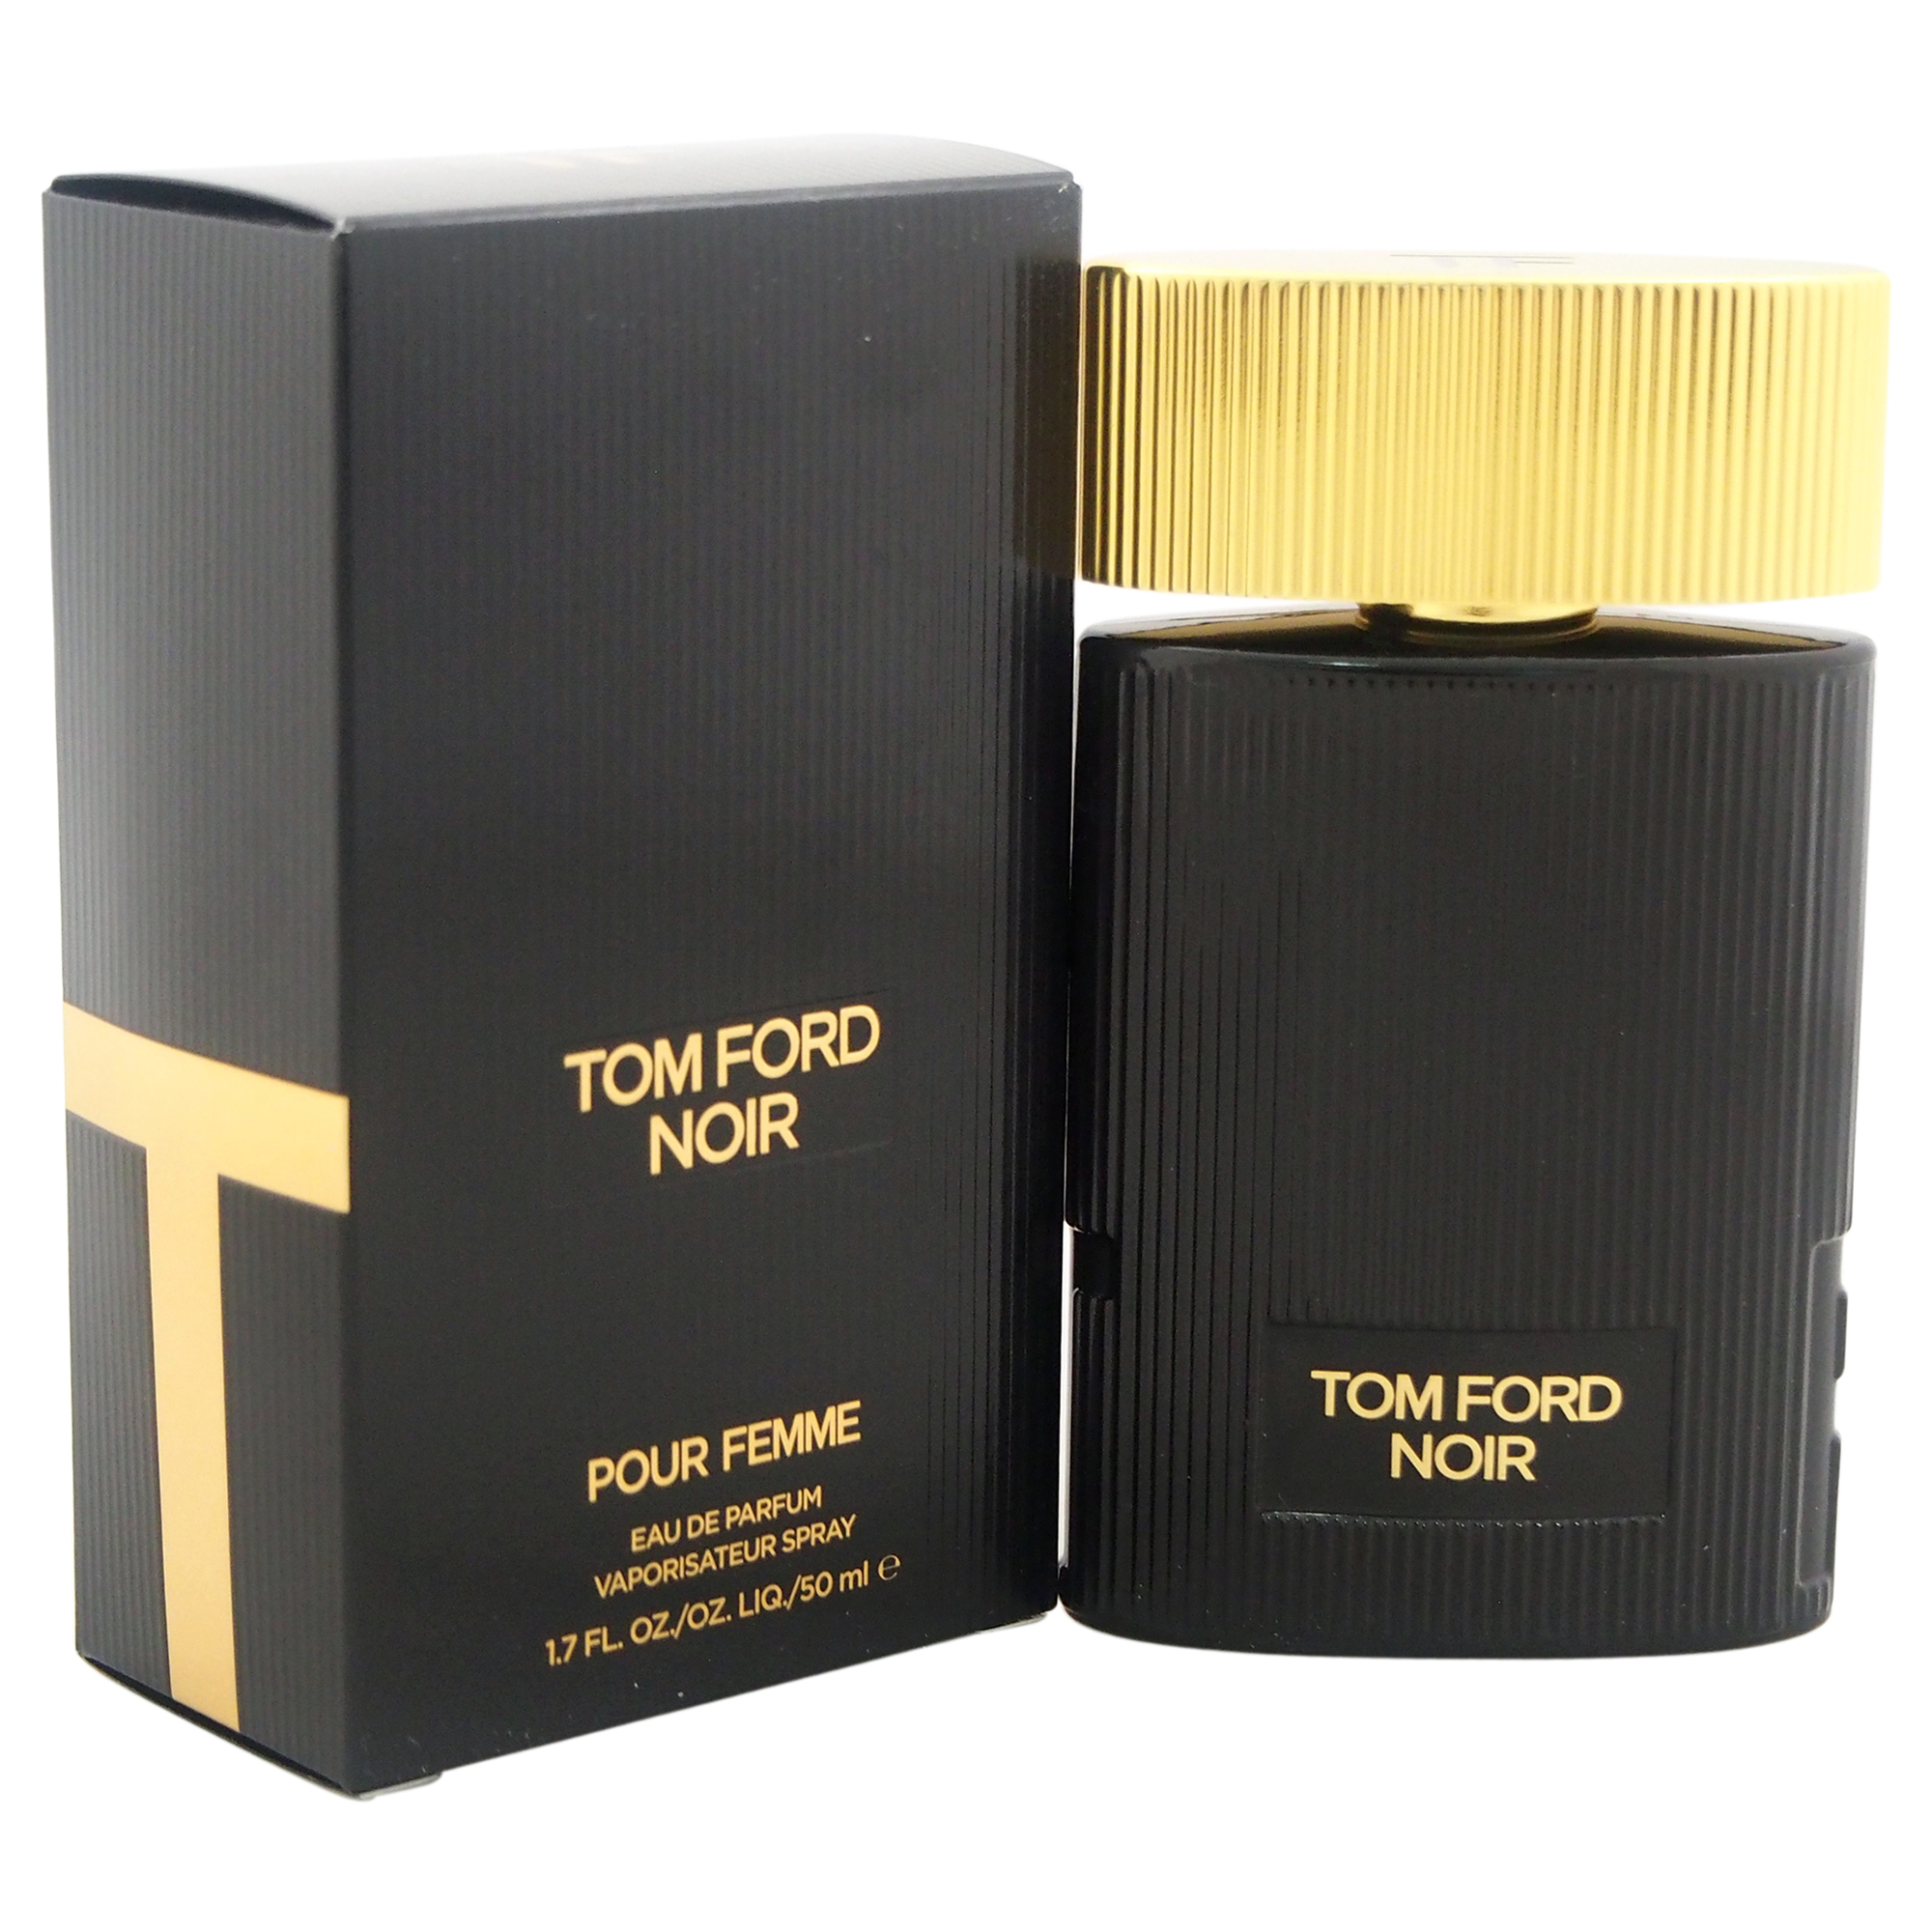 Tom ford купить мужские. Tom Ford Noir pour femme 100 ml. Tom Ford Noir 50ml. Tom Ford "Noir pour femme Eau de Parfum" 100 ml. Tom Ford Noir 100 ml женский.